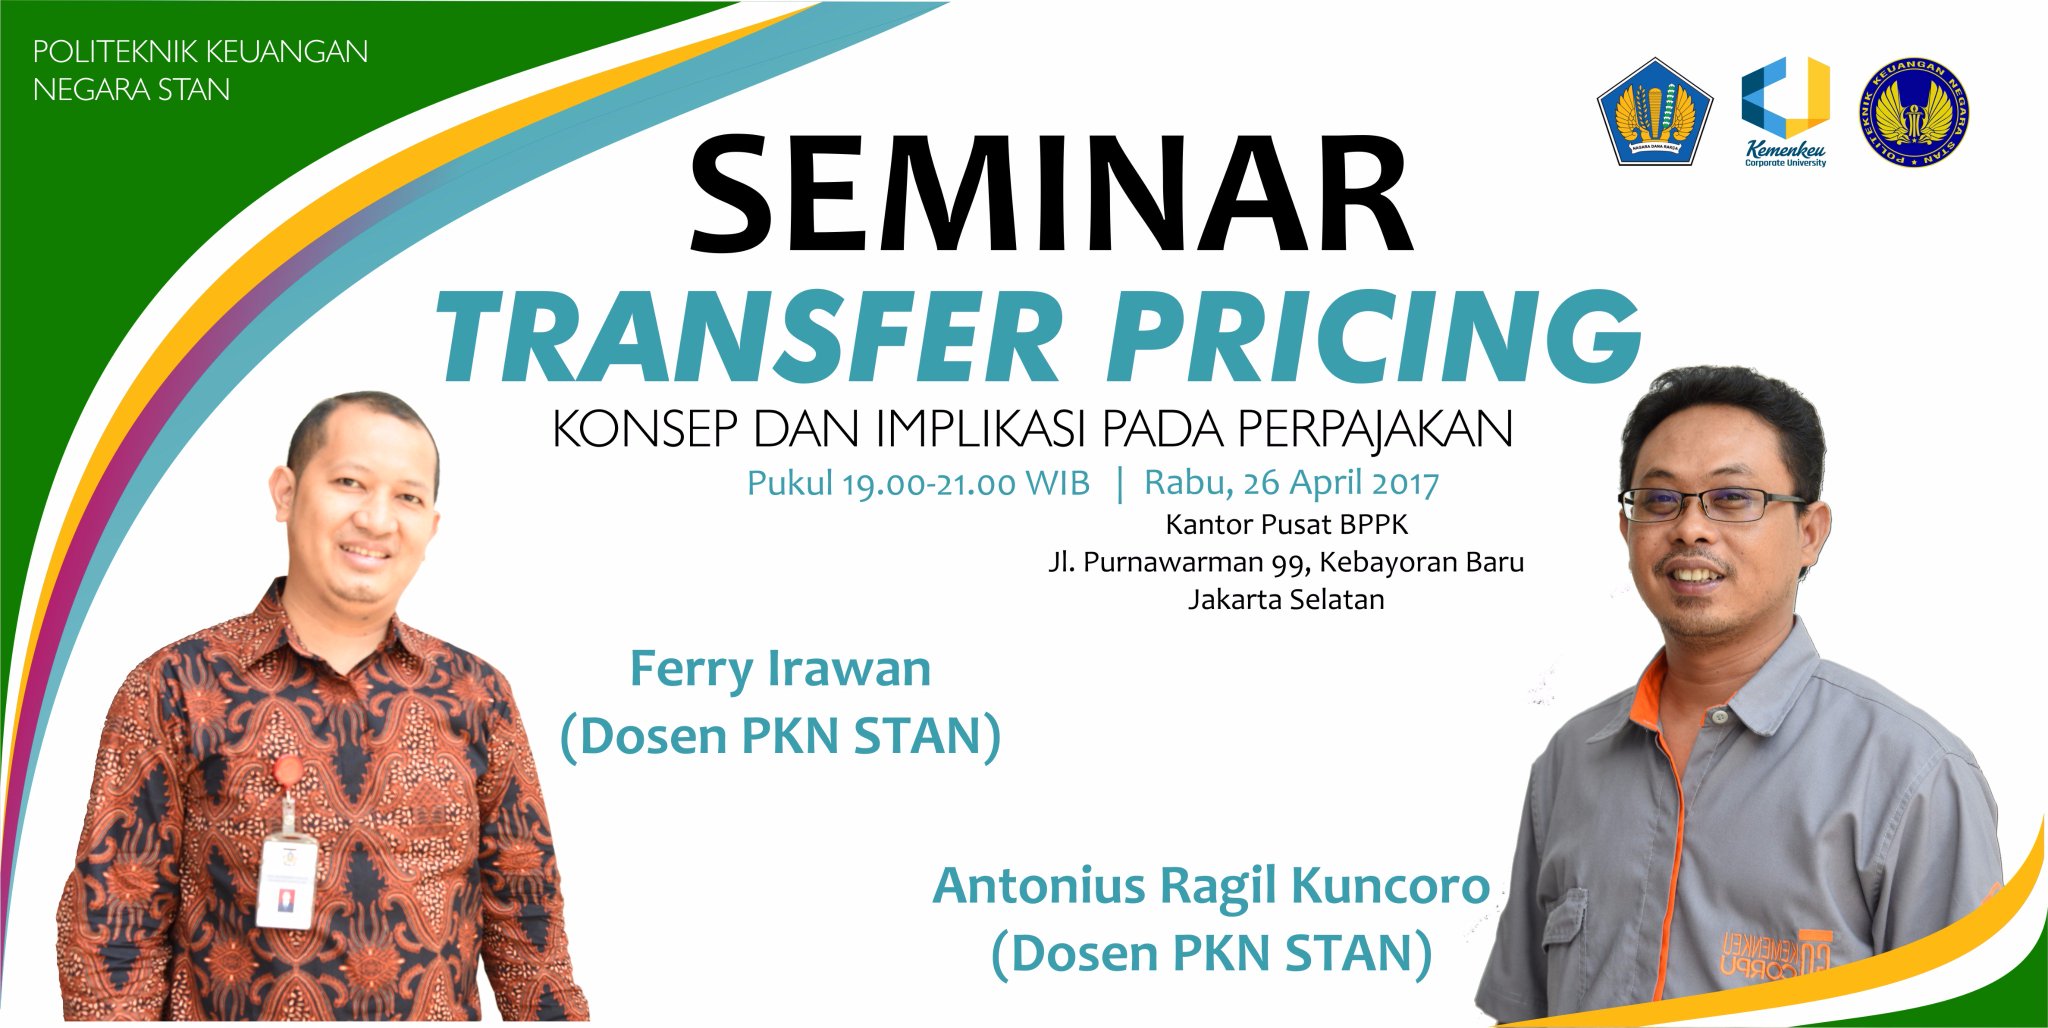 PKN STAN on Twitter "Politeknik Keuangan Negara STAN malam ini mempersembahkan Seminar Transfer Pricing bagi yang sudah mendaftar jangan sampai